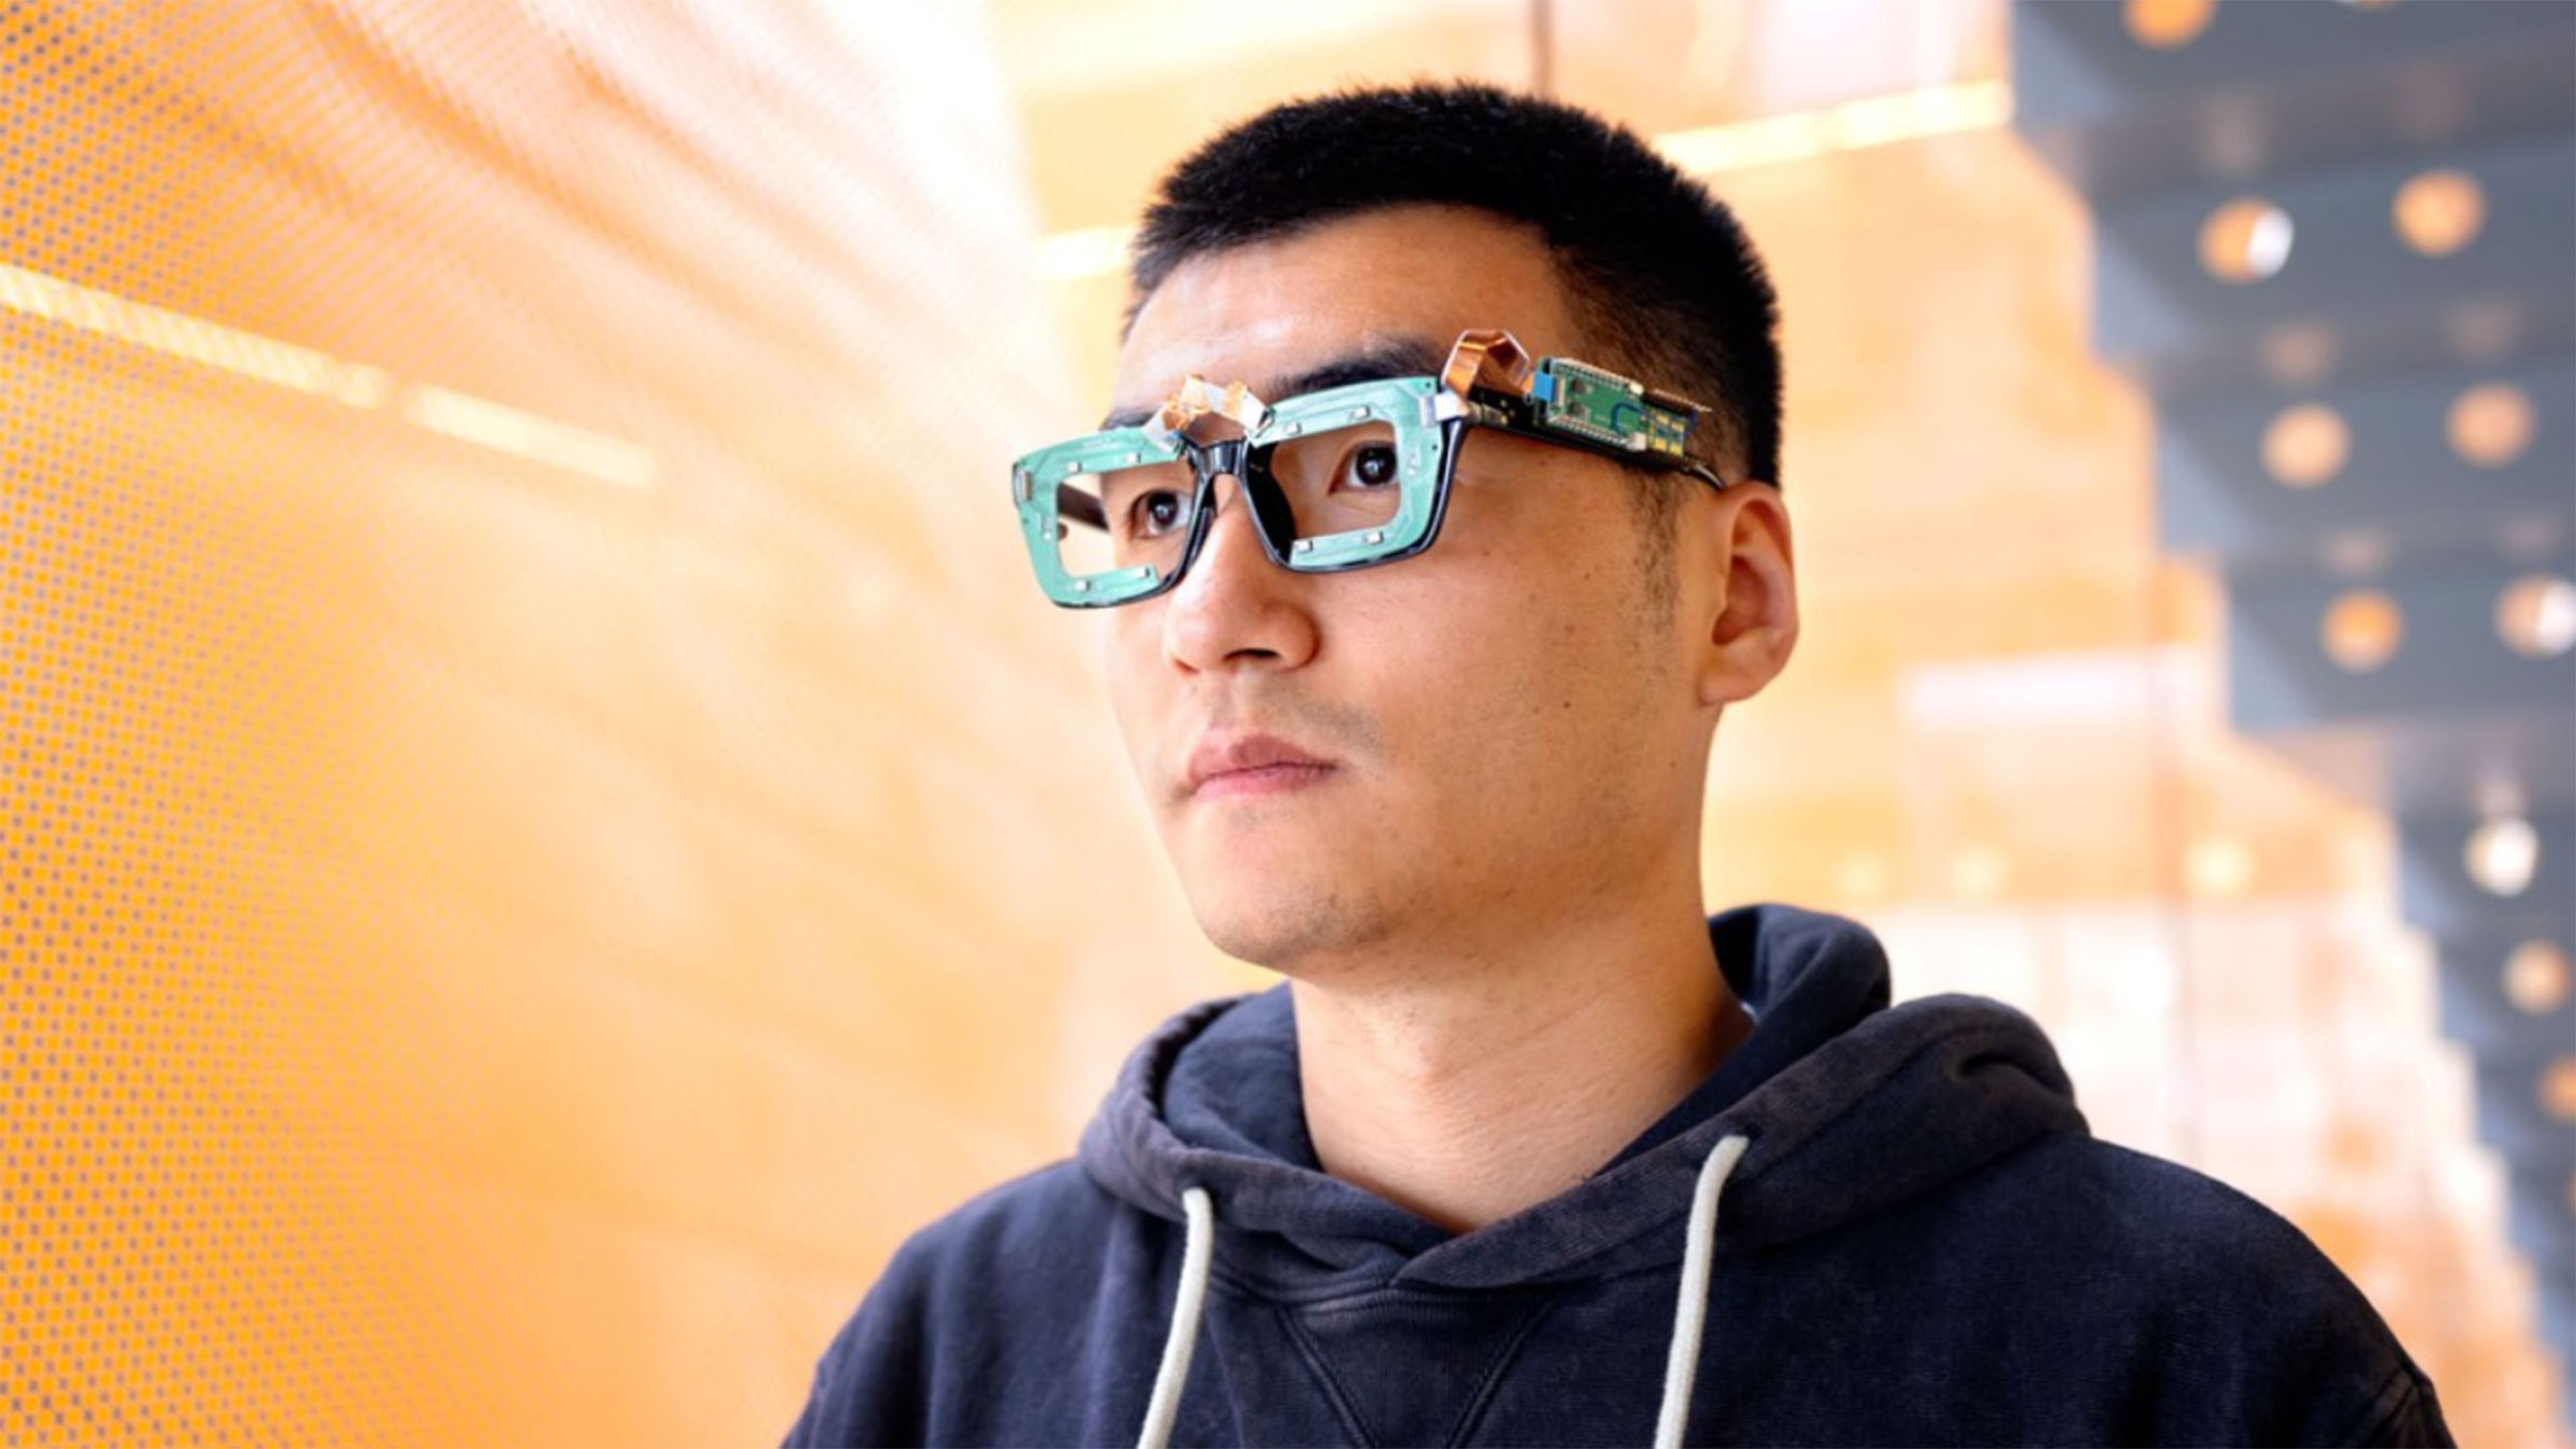 Crean unas gafas inteligentes que rastrean la mirada y las expresiones faciales, y sin cámaras